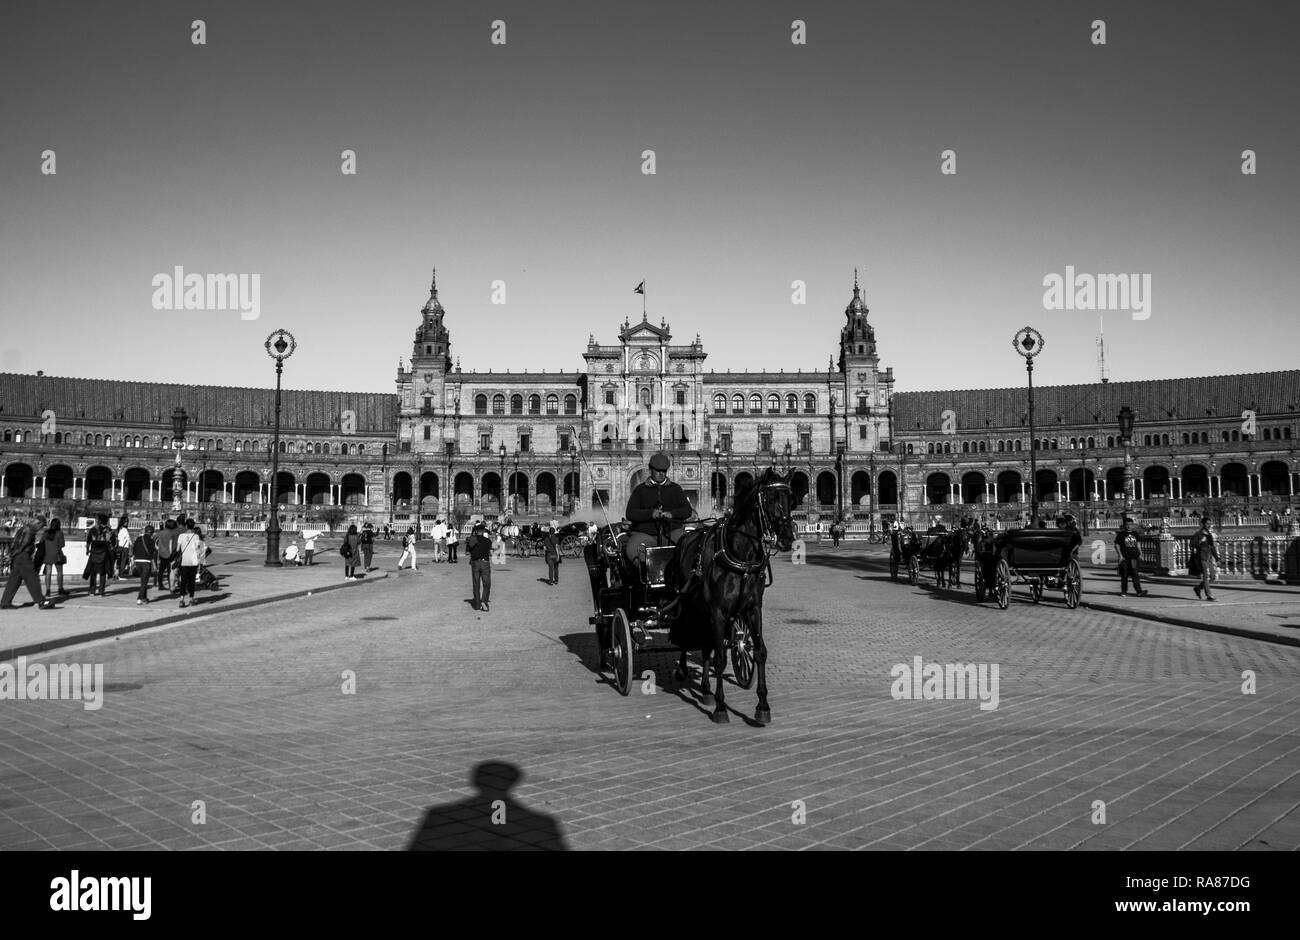 Un carrello che si muove nel centro di Plaza de España, una piazza di Siviglia, capitale dell'Andalusia, Spagna. Questa piazza fu costruita nel 1928. Foto Stock